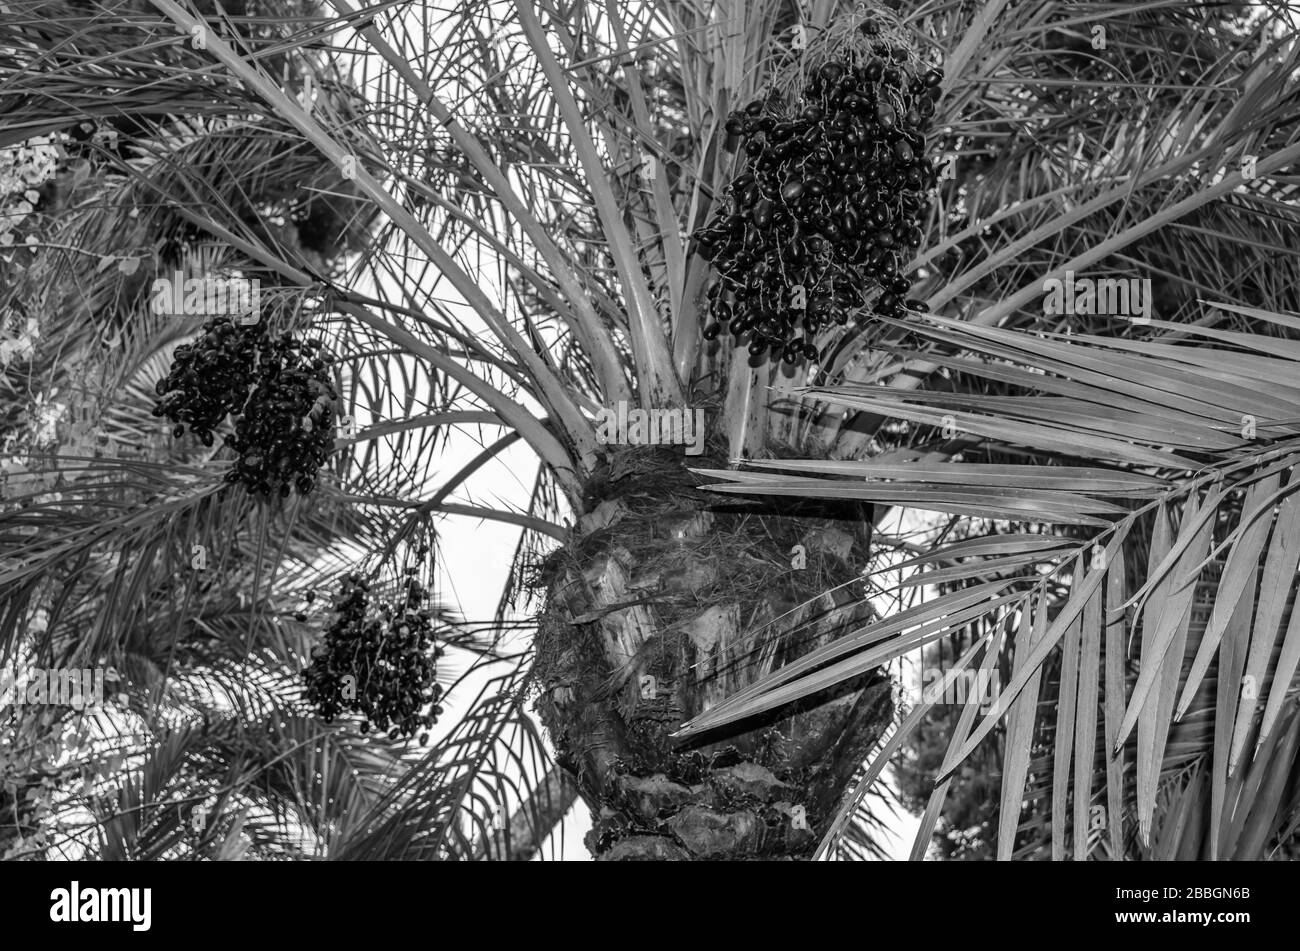 Détail d'un palmier à dattes avec des fruits déchirés, image en noir et blanc Banque D'Images